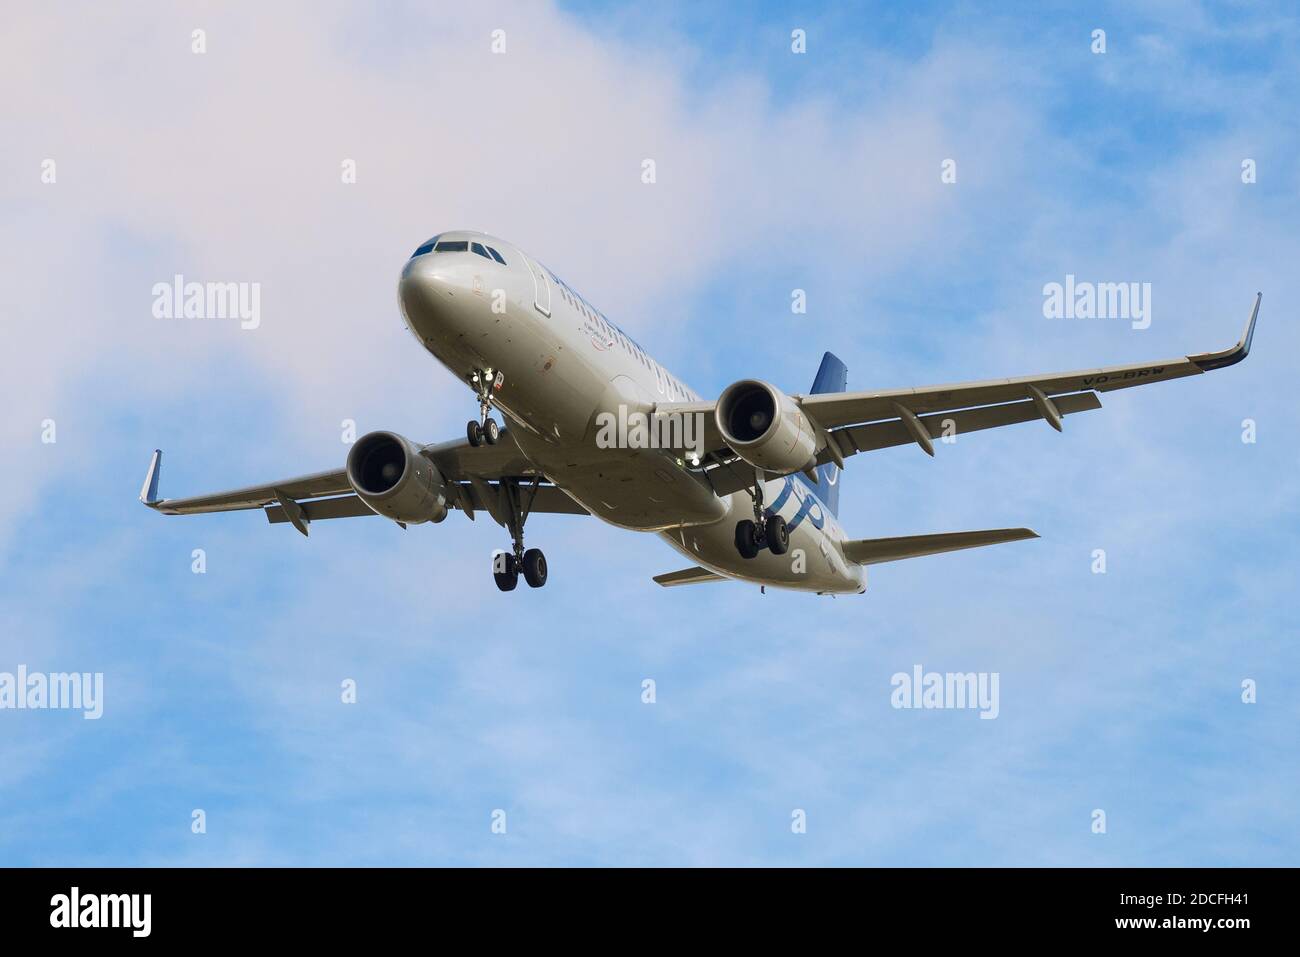 SANKT PETERSBURG, RUSSLAND - 28. OKTOBER 2020: Airbus A321-214 (VQ-BRW) der Aeroflot-Fluggesellschaften auf der Gleitbahn. Stockfoto